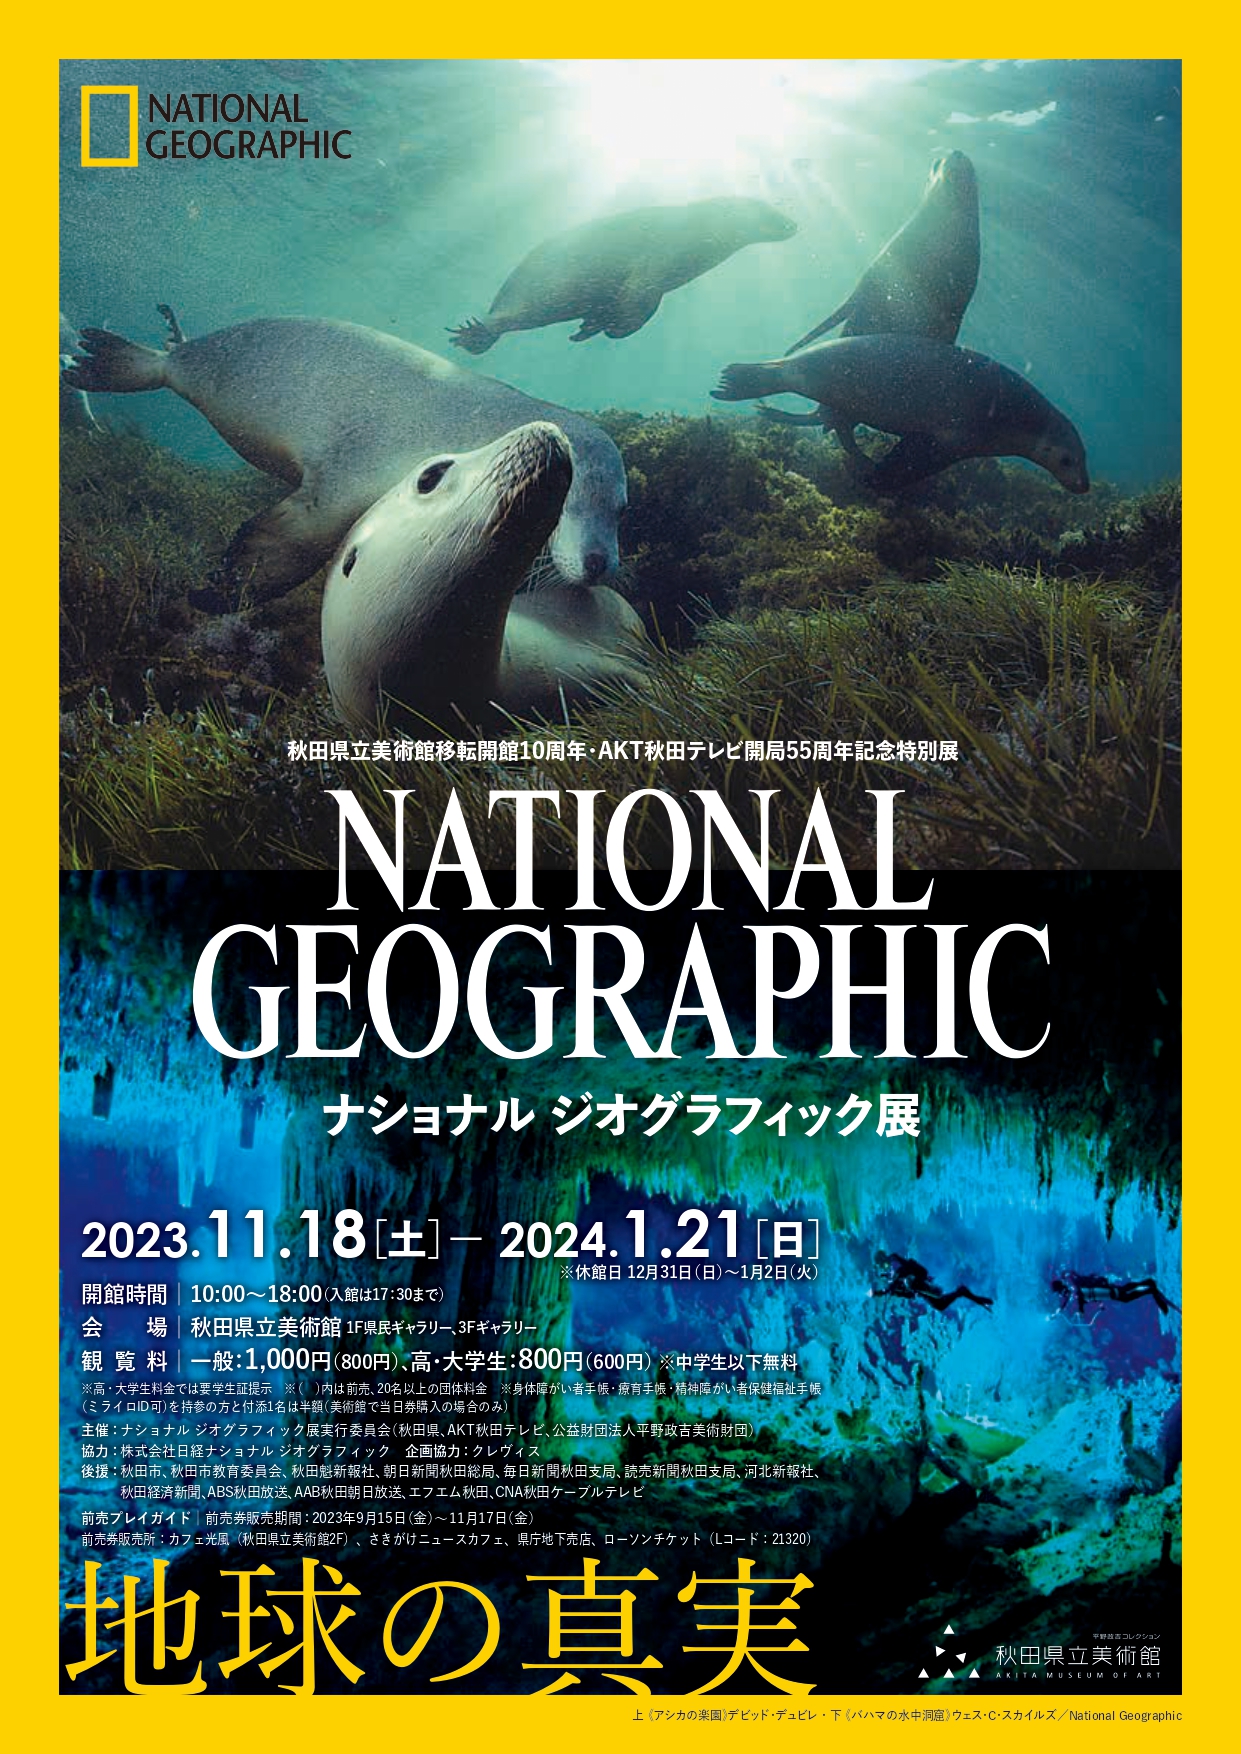 「ナショナル ジオグラフィック展 地球の真実」 （秋田県立美術館